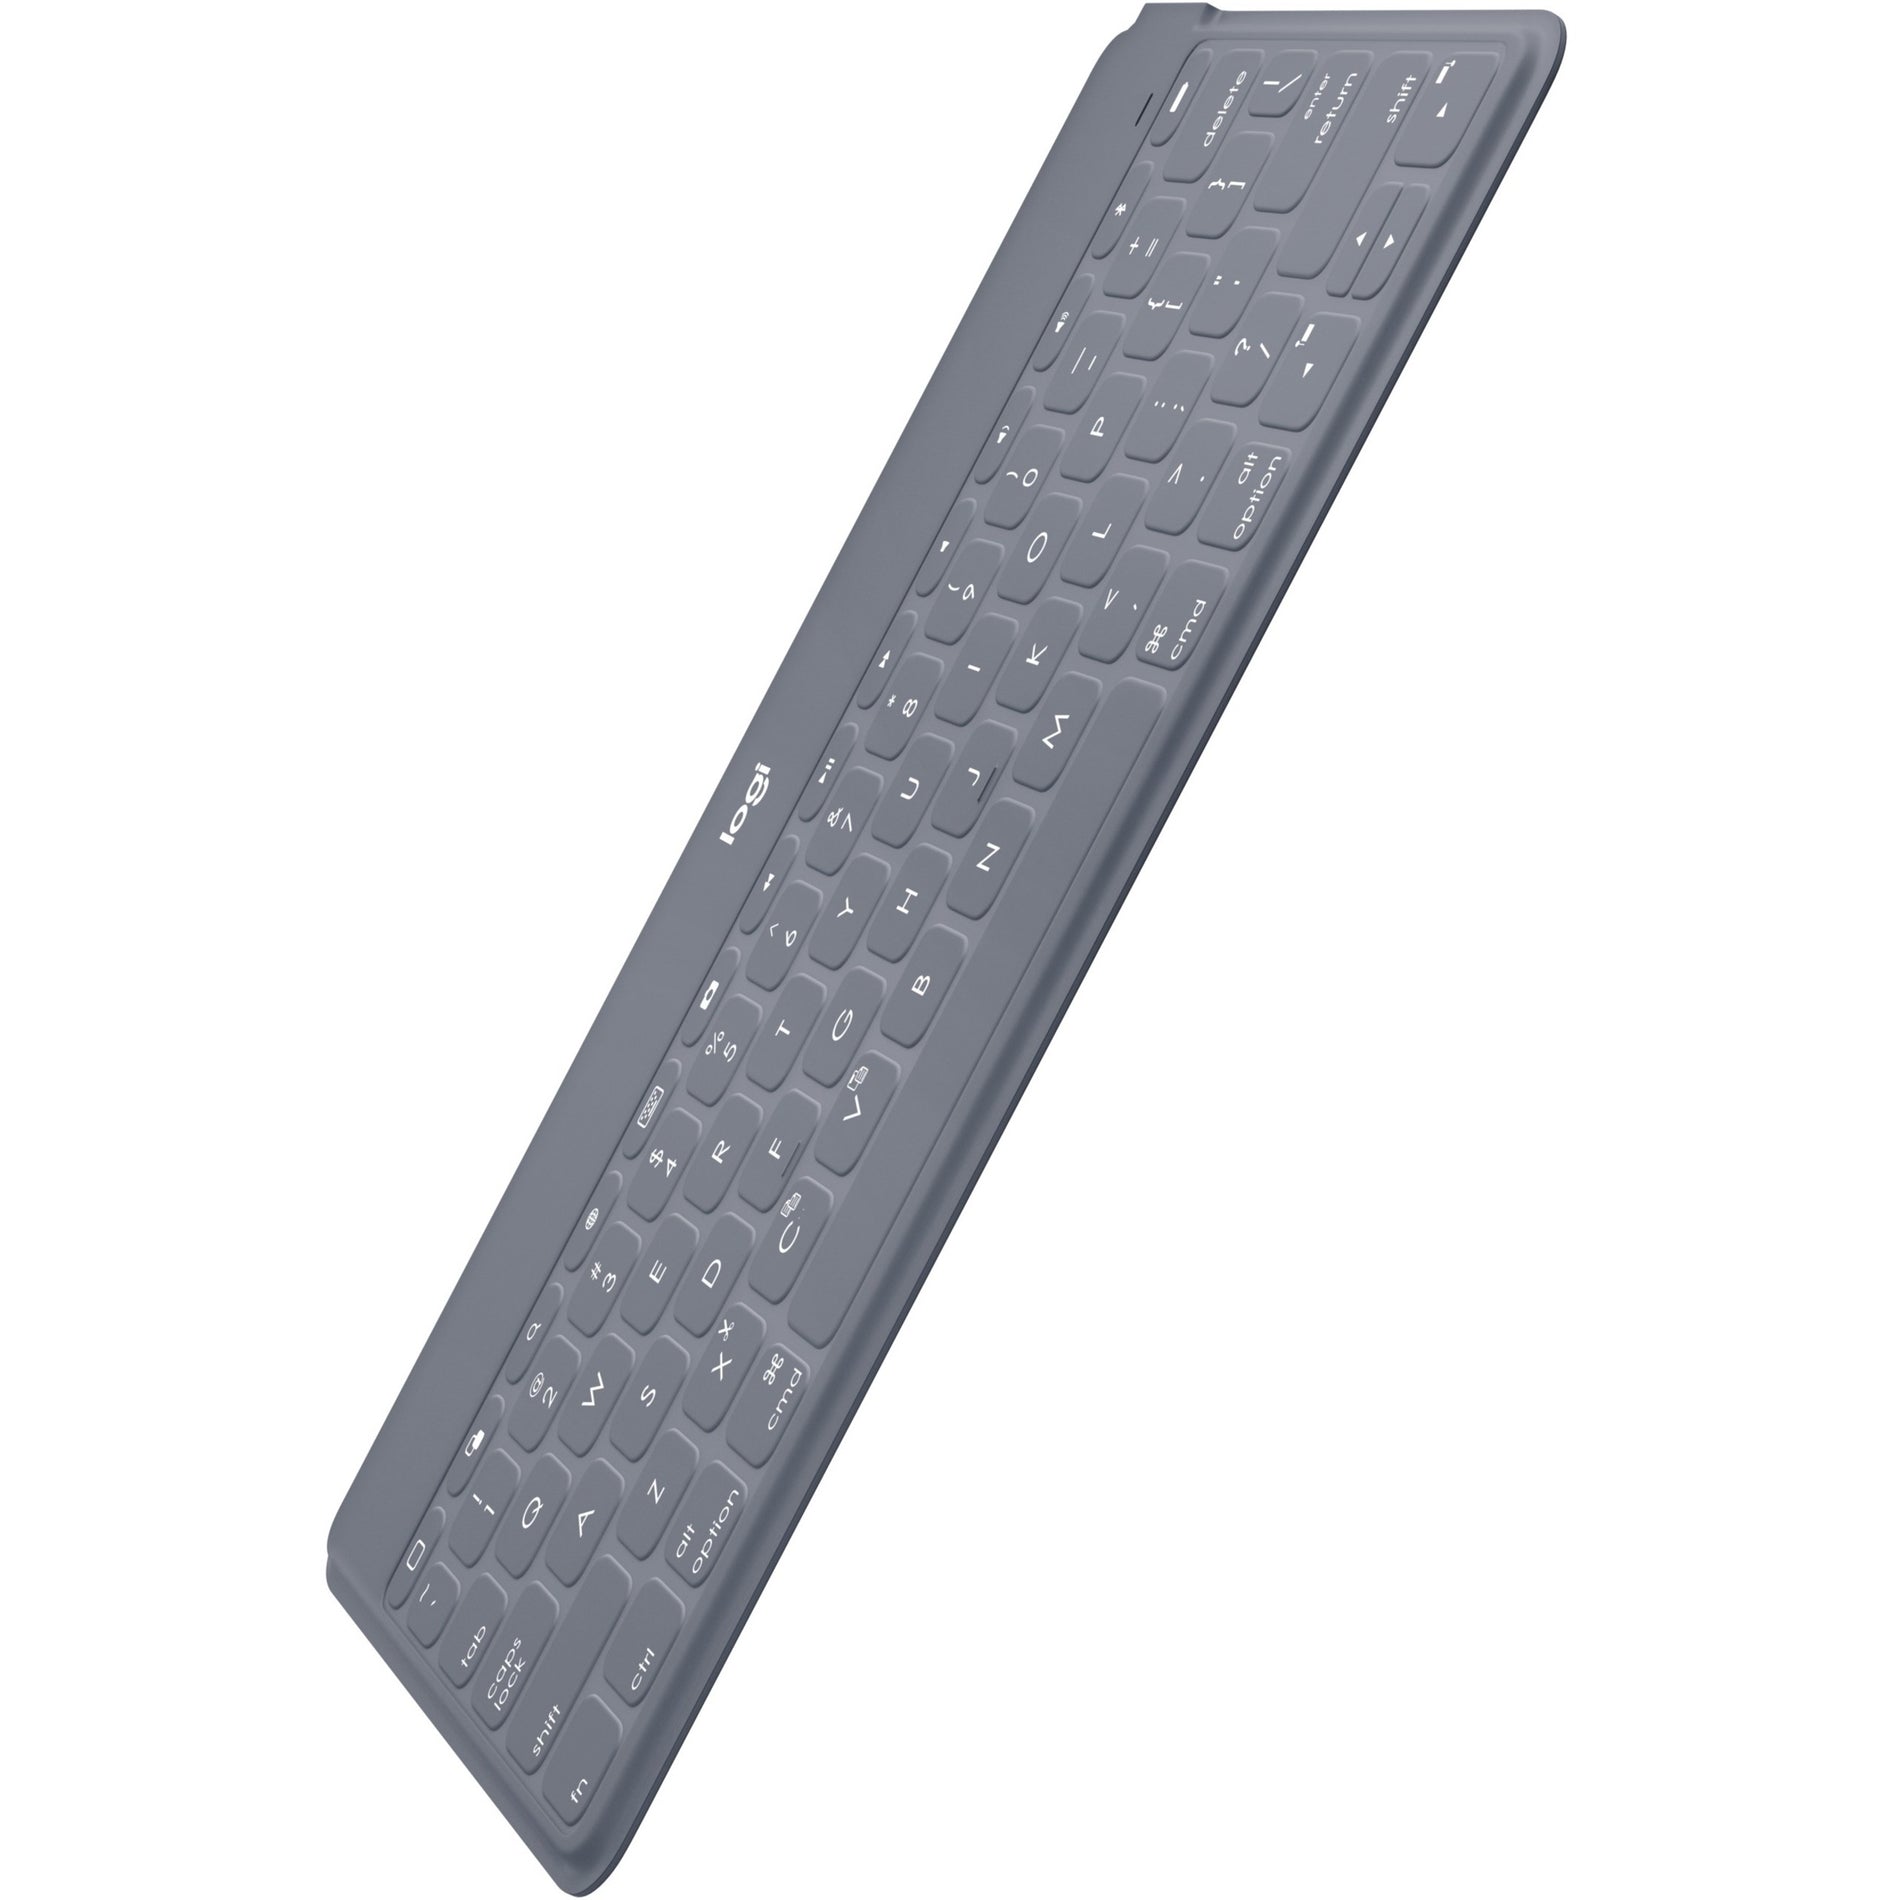 Logitech 920-008918 Keys-To-Go Tastatur schlank und tragbar Bluetooth Wireless Tastatur für iPad Apple TV und iPhone